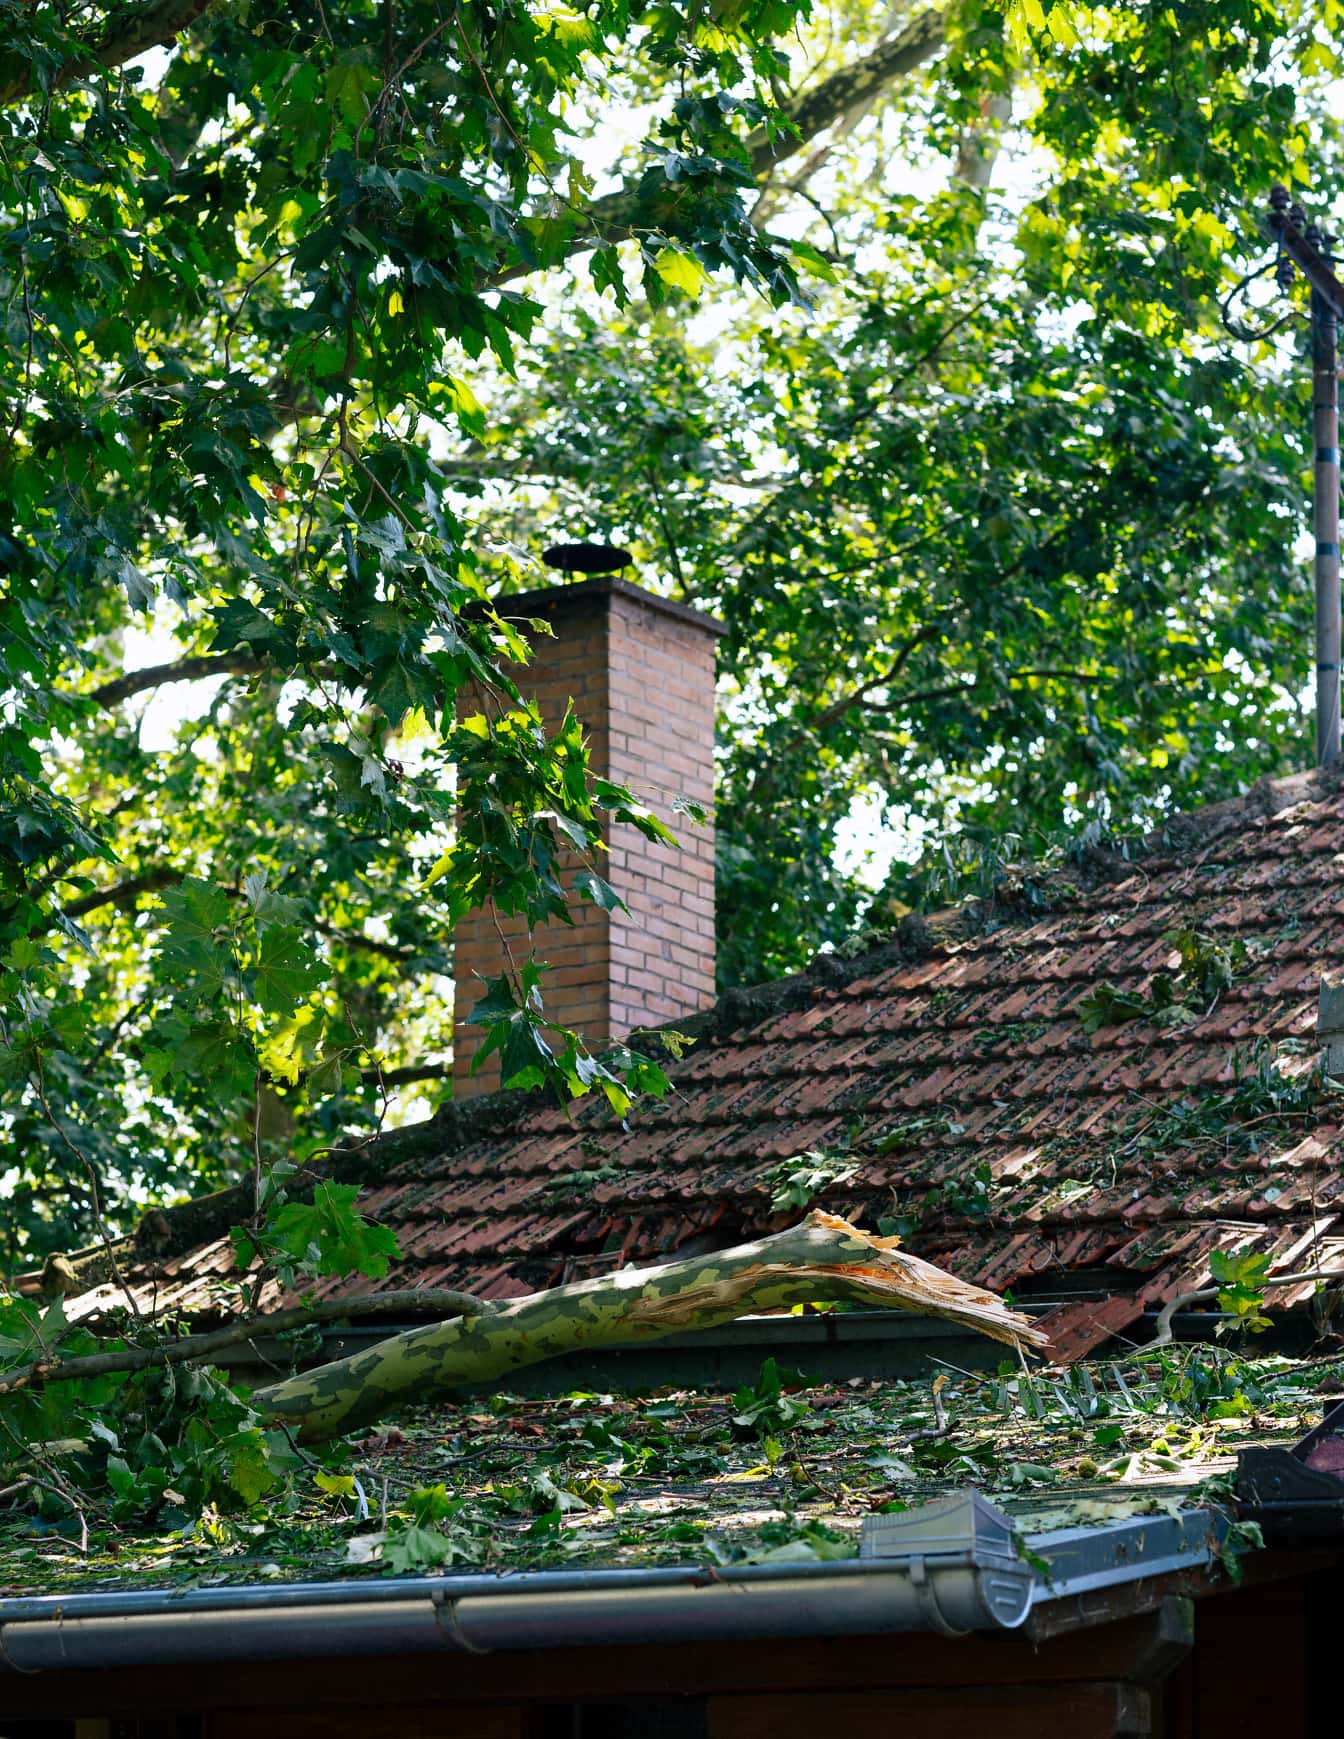 나무 줄기가 주택의 옥상과 기와를 손상시킨다